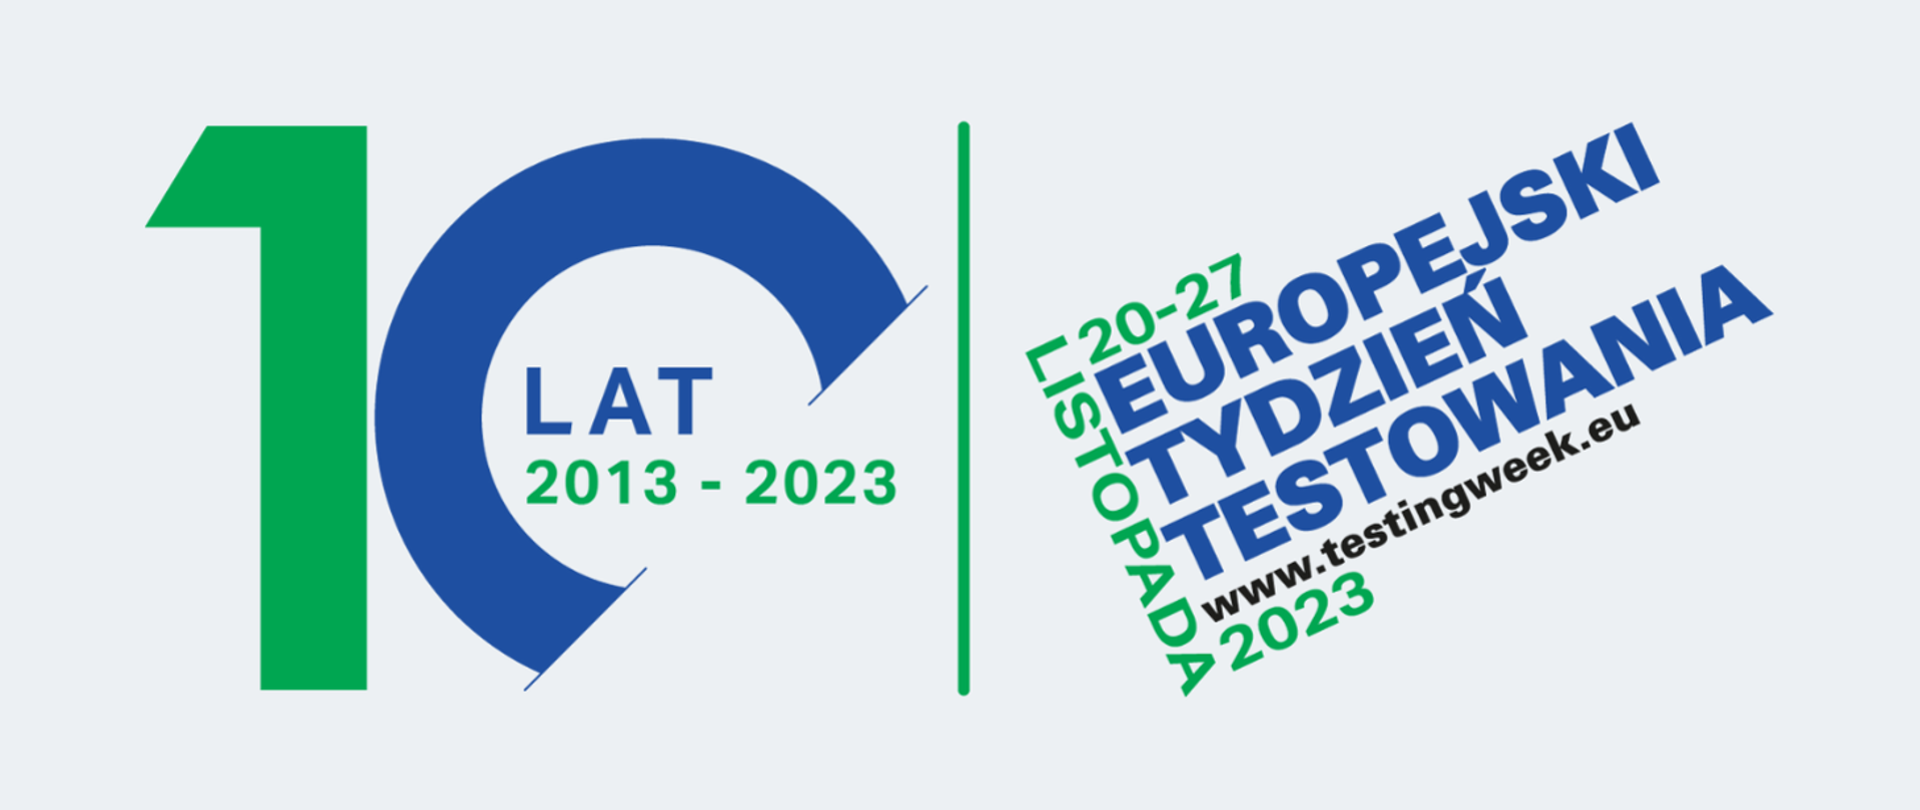 Baner przedstawia napis Europejski Tydzień testowania 20-27 listopada 2023